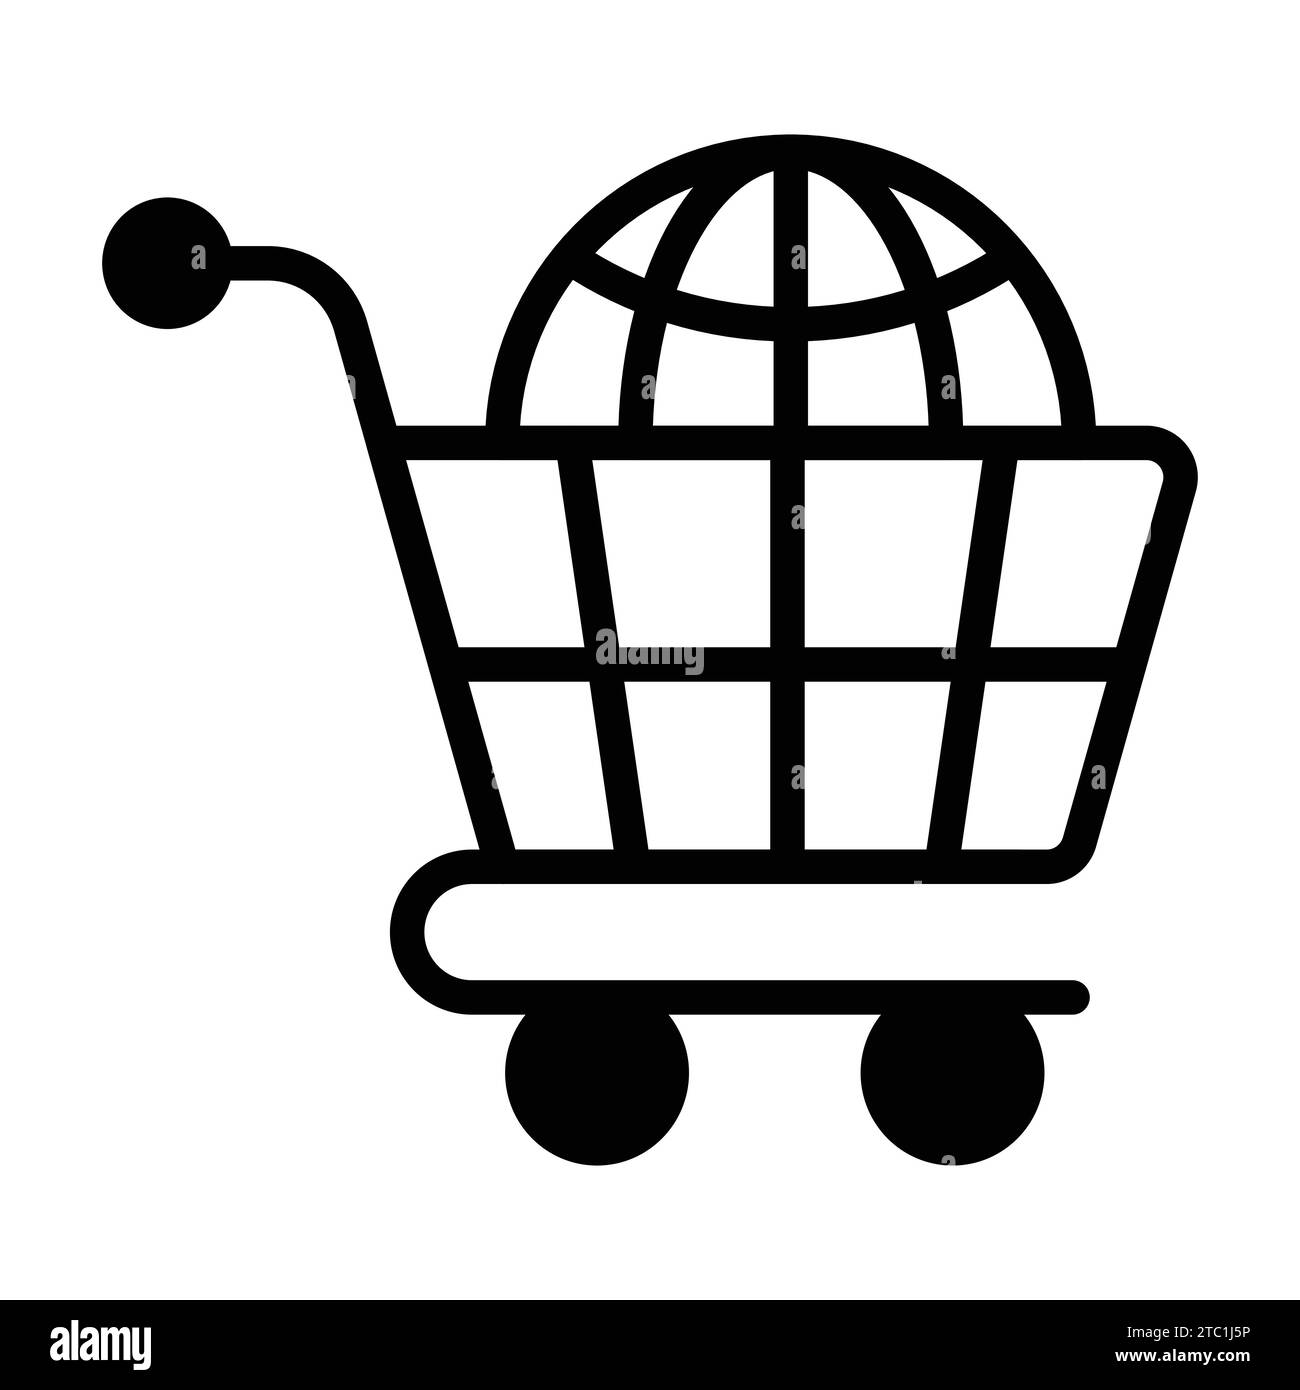 Schnappen Sie sich diesen sorgfältig gefertigten Vektor des globalen Einkaufs im trendigen Stil, einer internationalen Shopping-Ikone. Stock Vektor